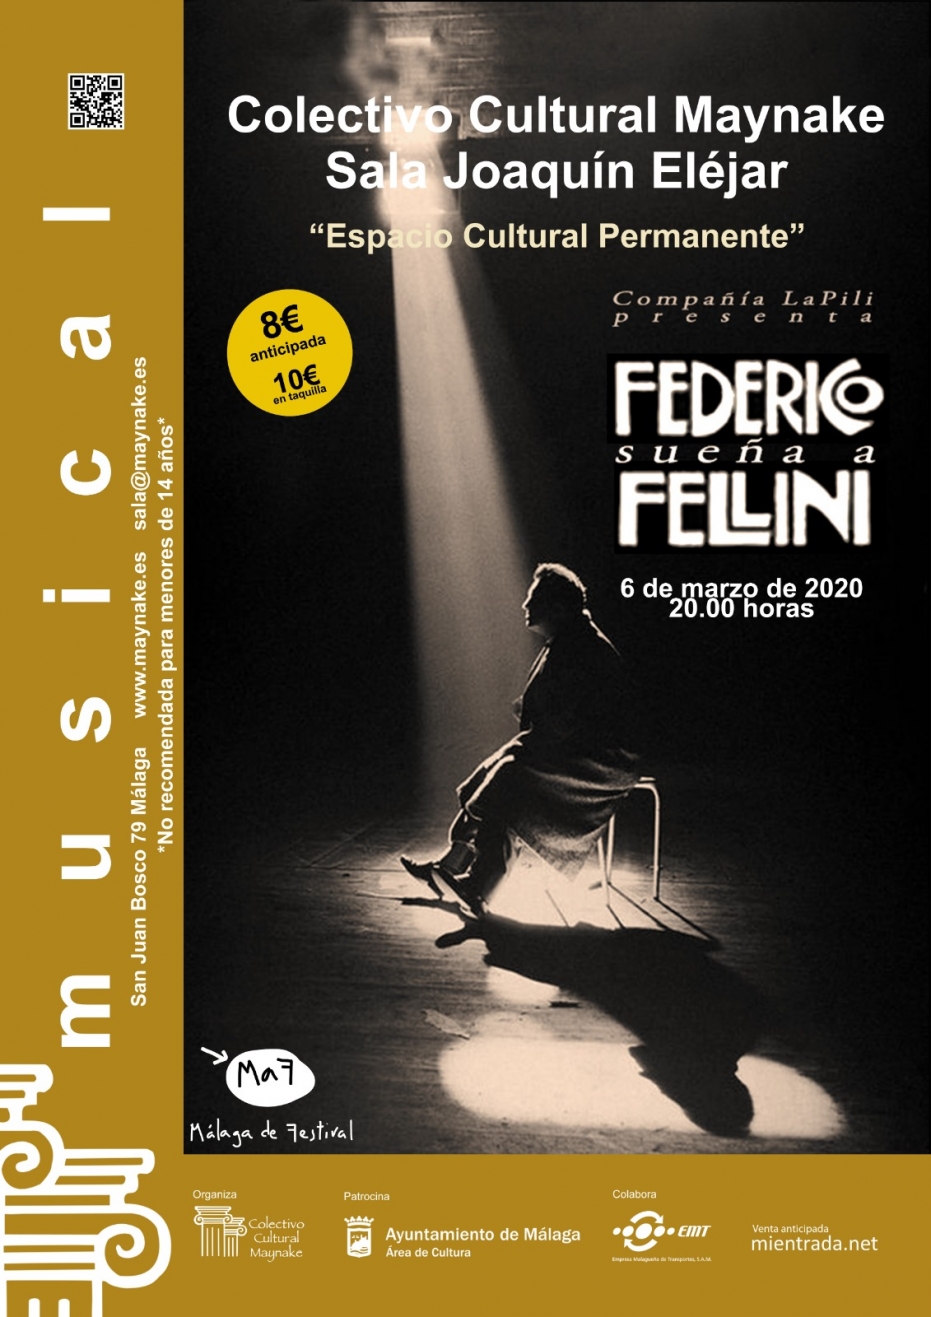 Federico sueña a Fellini, de la compañía LaPili